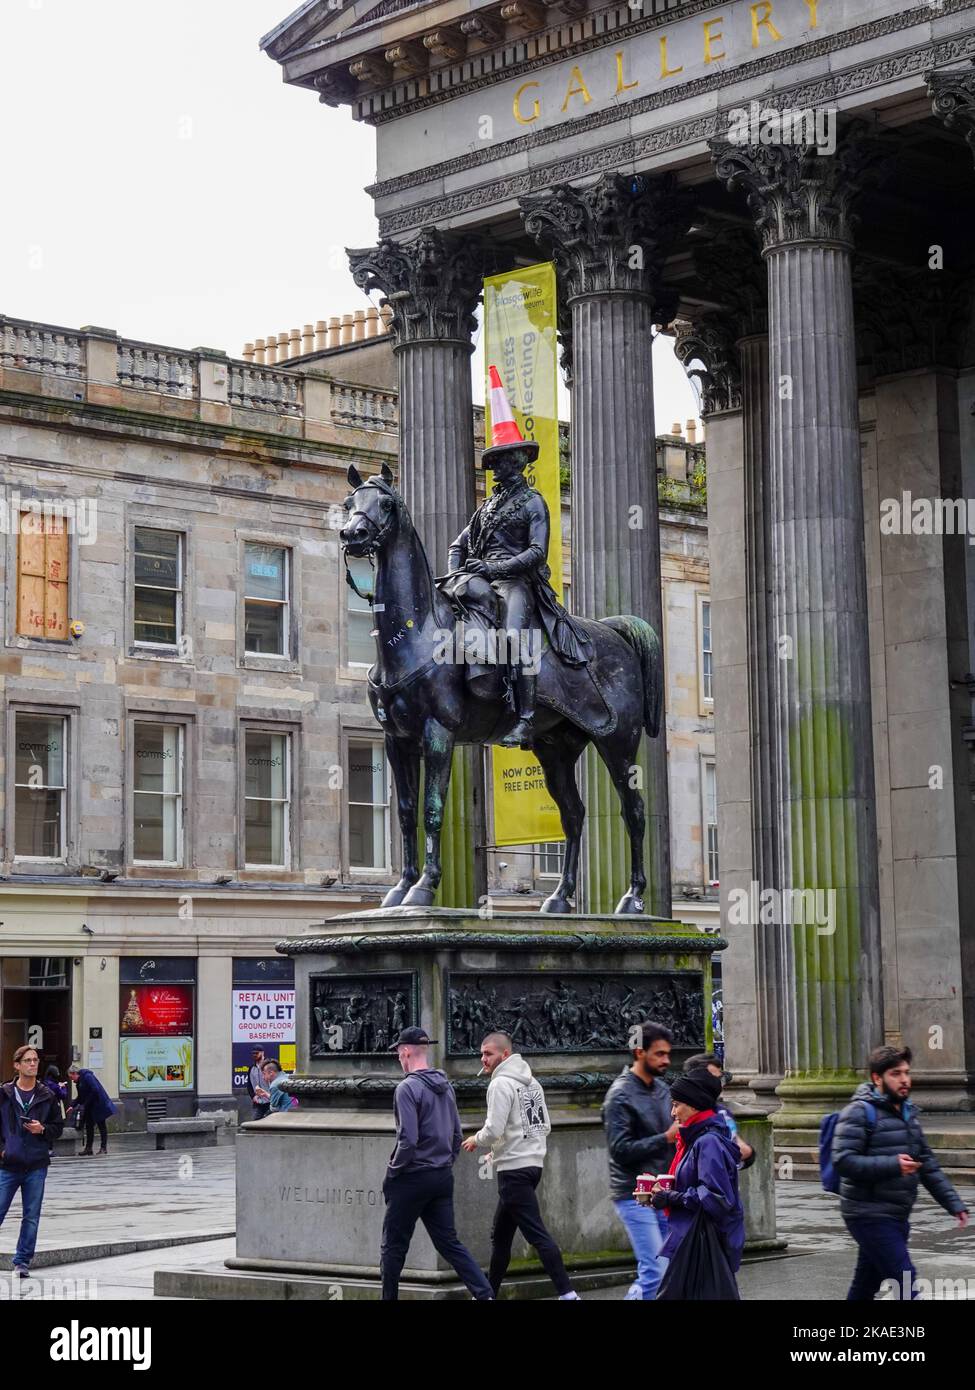 Galerie néoclassique d'art moderne, Goma, Glasgow, Écosse, Royaume-Uni, Duc de Wellington portant un cône de circulation et la région qui a l'air délabrée et louche. Banque D'Images